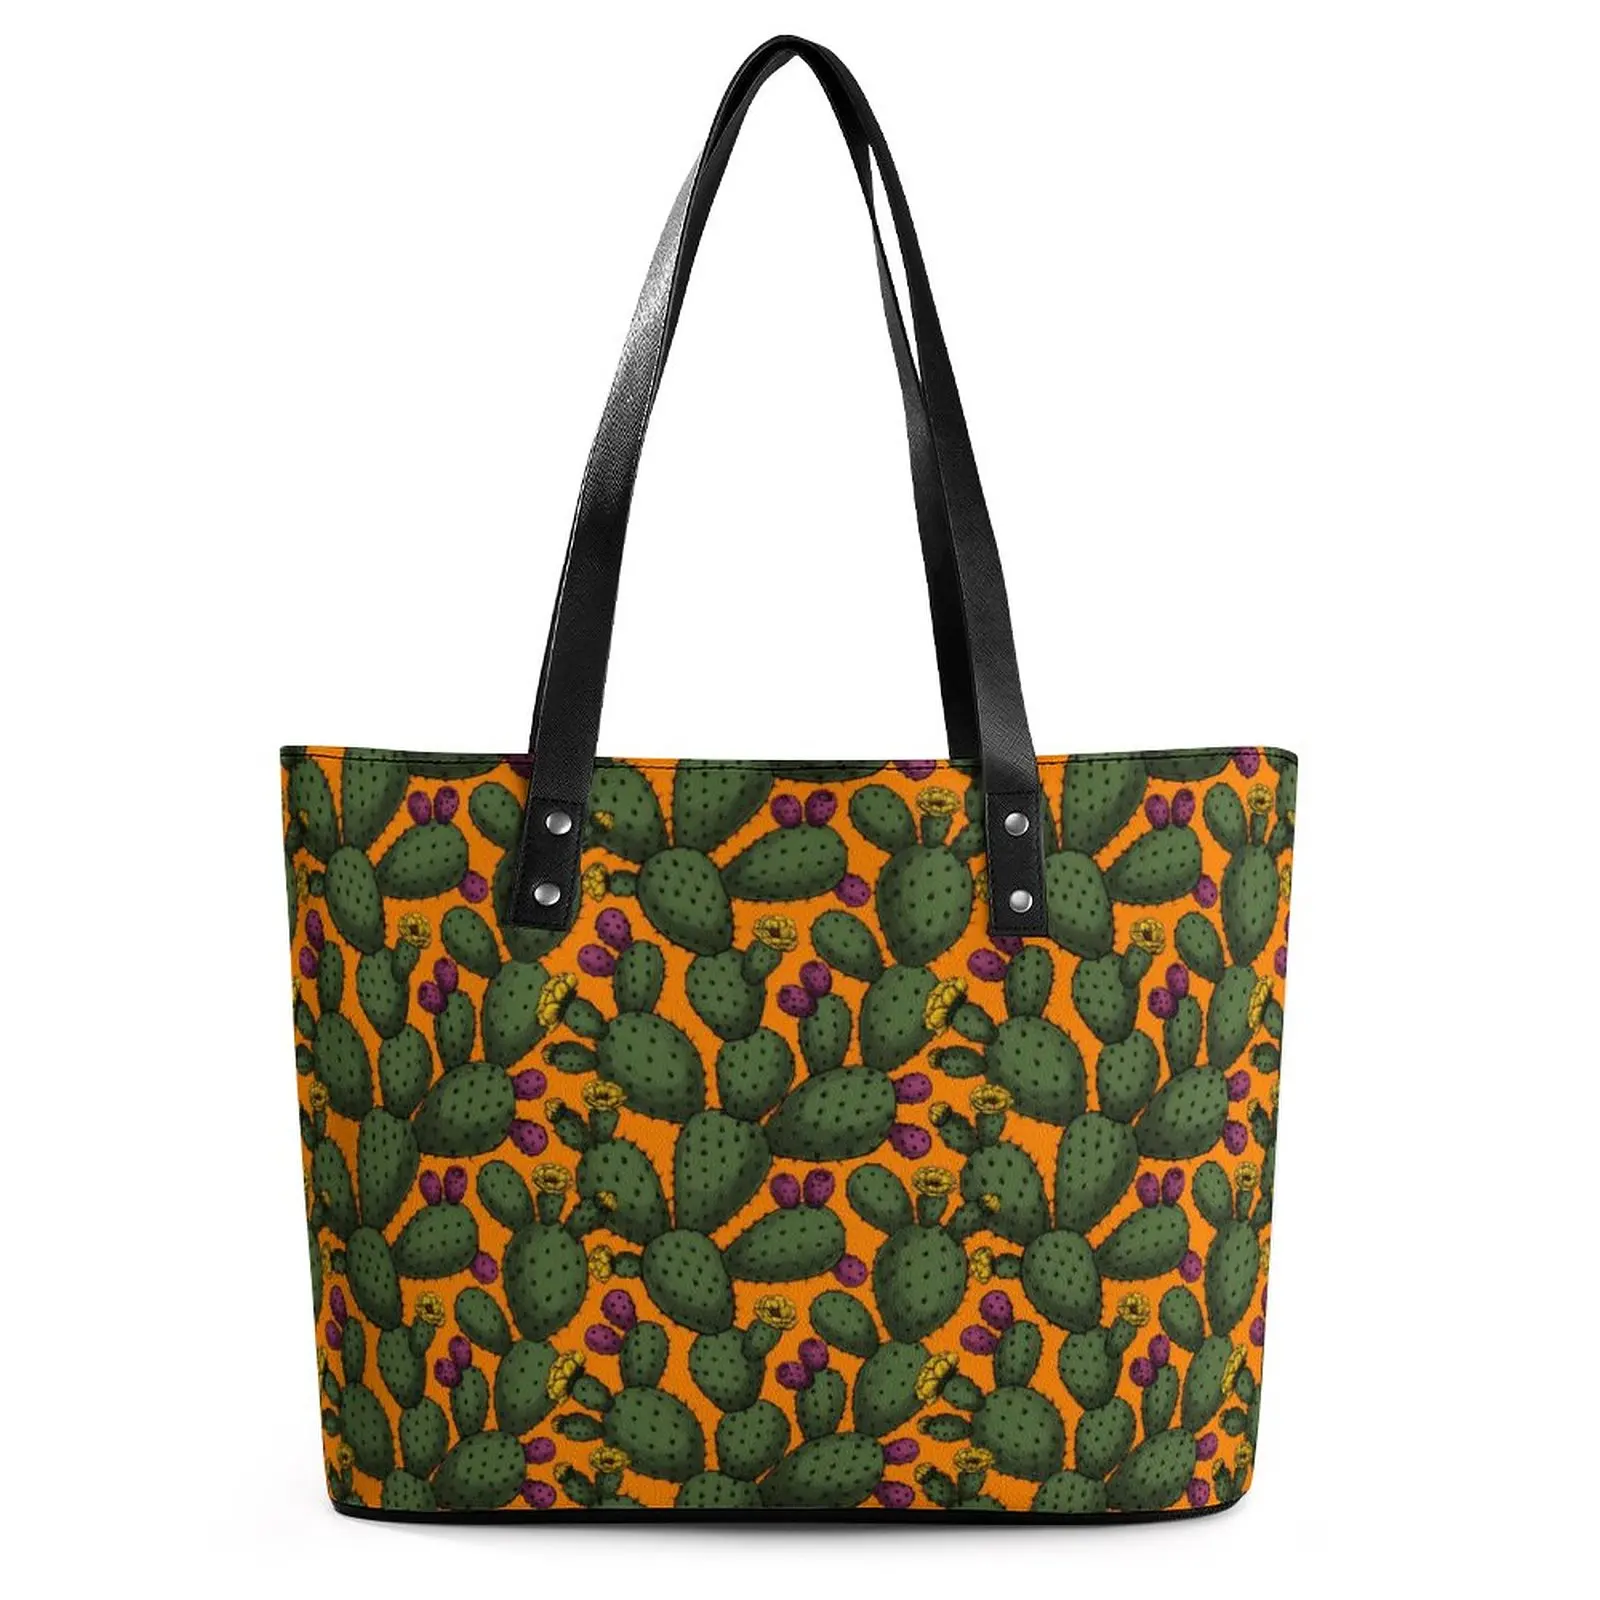 

Сумки с принтом кактуса, сумка-тоут с карманом пустыни и заката, стильная сумка через плечо из искусственной кожи, Дамская офисная сумка-шоппер